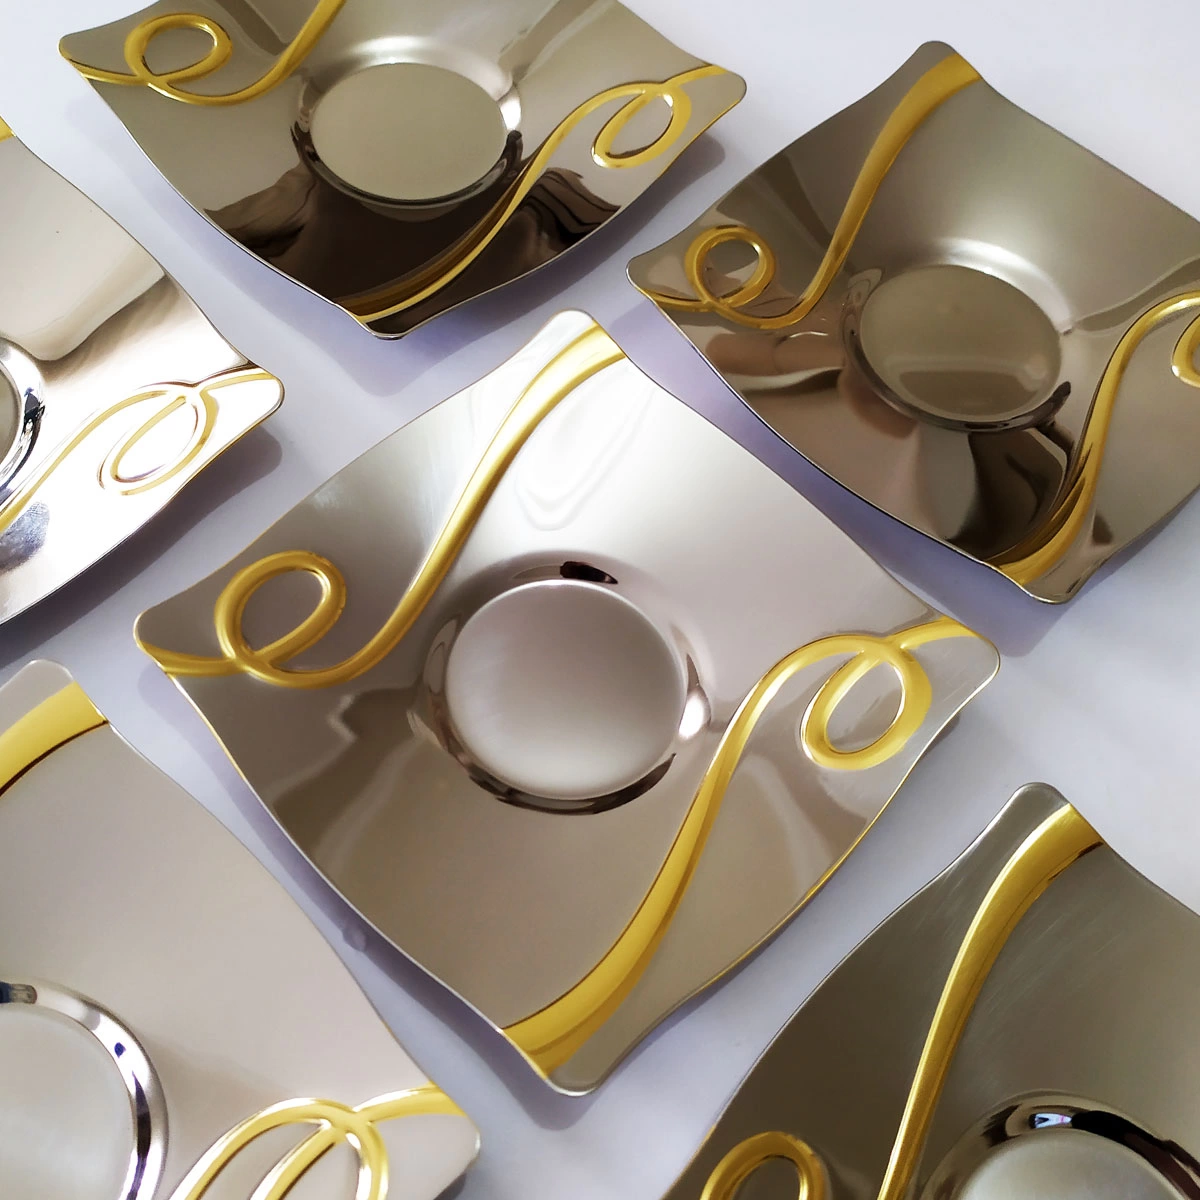 Tiamo İnna Desen Çelik Gold Detay Çay Tabağı - 6 Adet